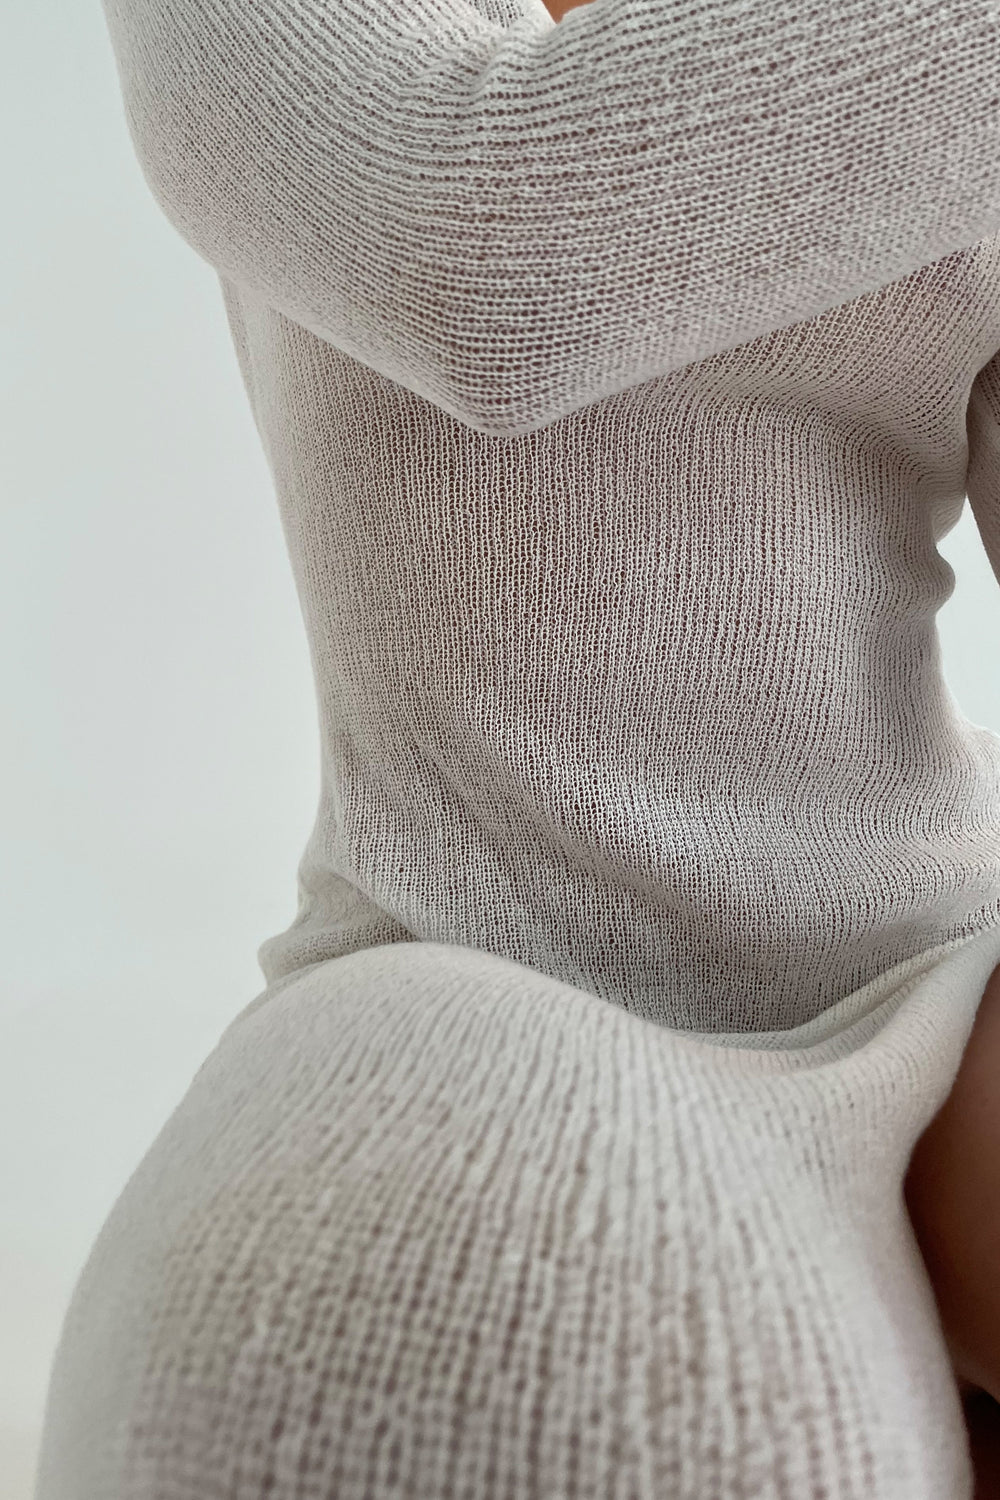 Imelda Knit Cover Up Midi Dress - White